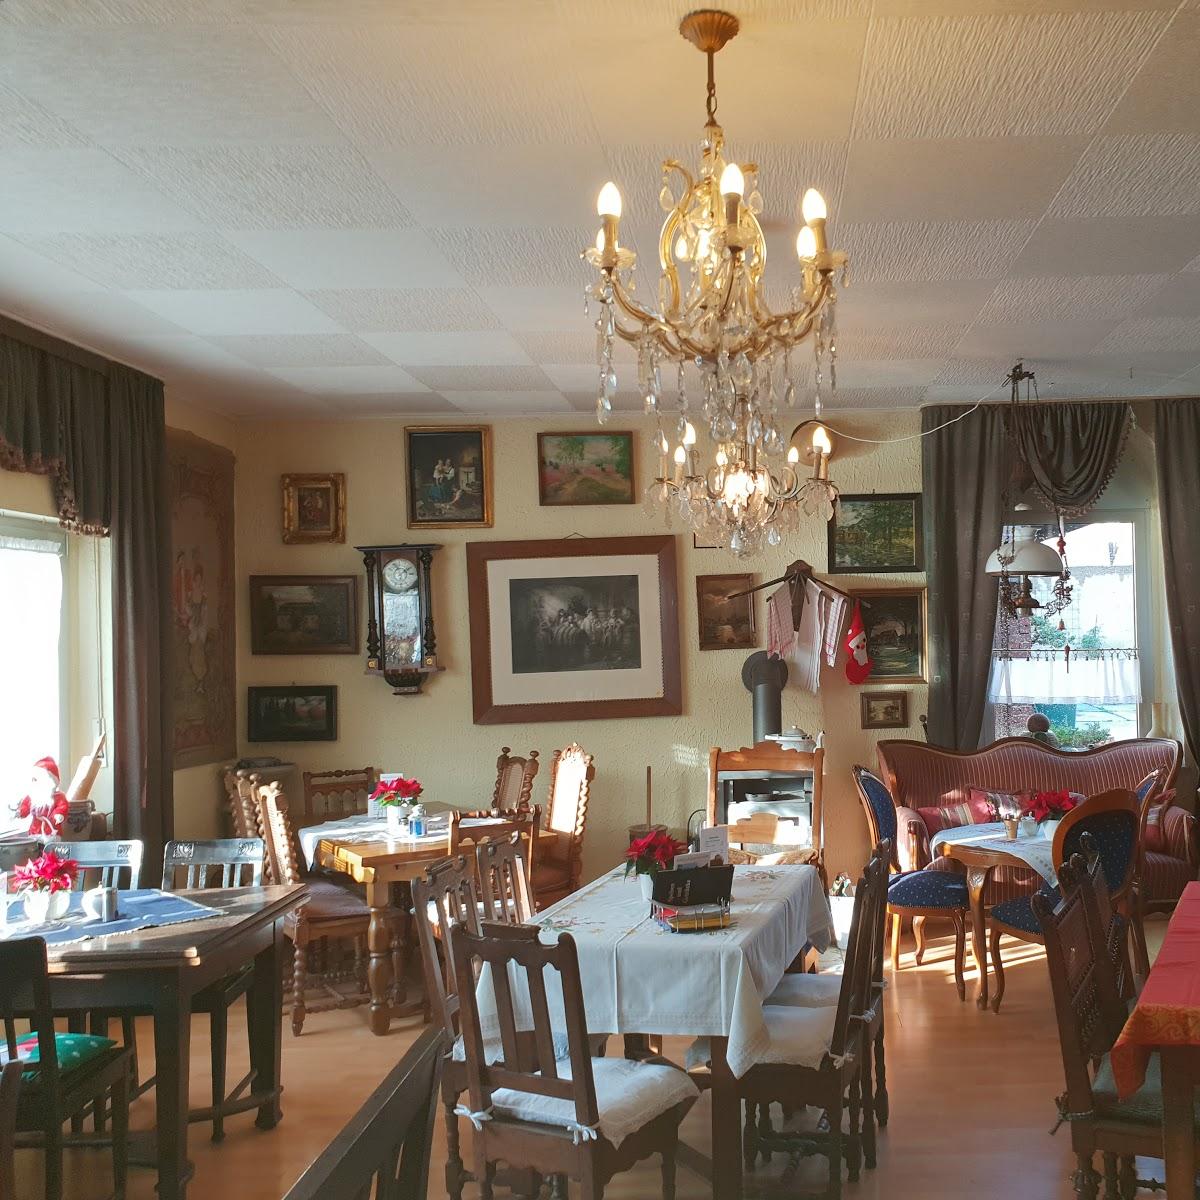 Restaurant "Eifeler Antikhaus Café" in Zülpich